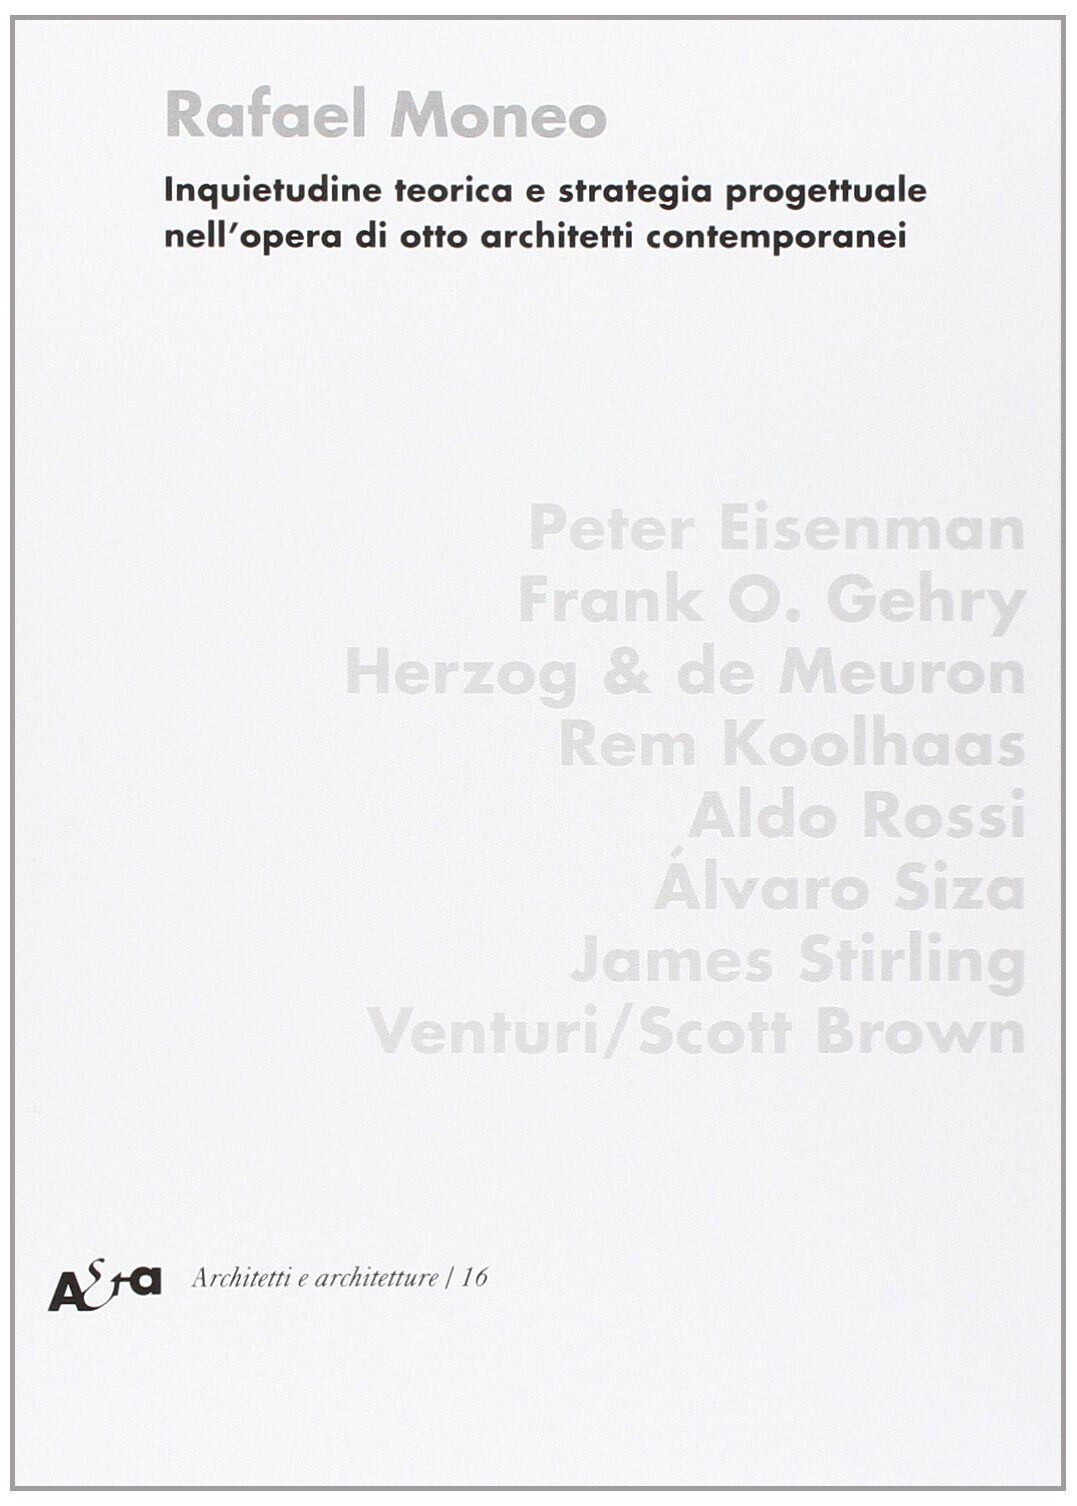 Inquietudine teorica e strategia progettuale nell'opera di otto architetti